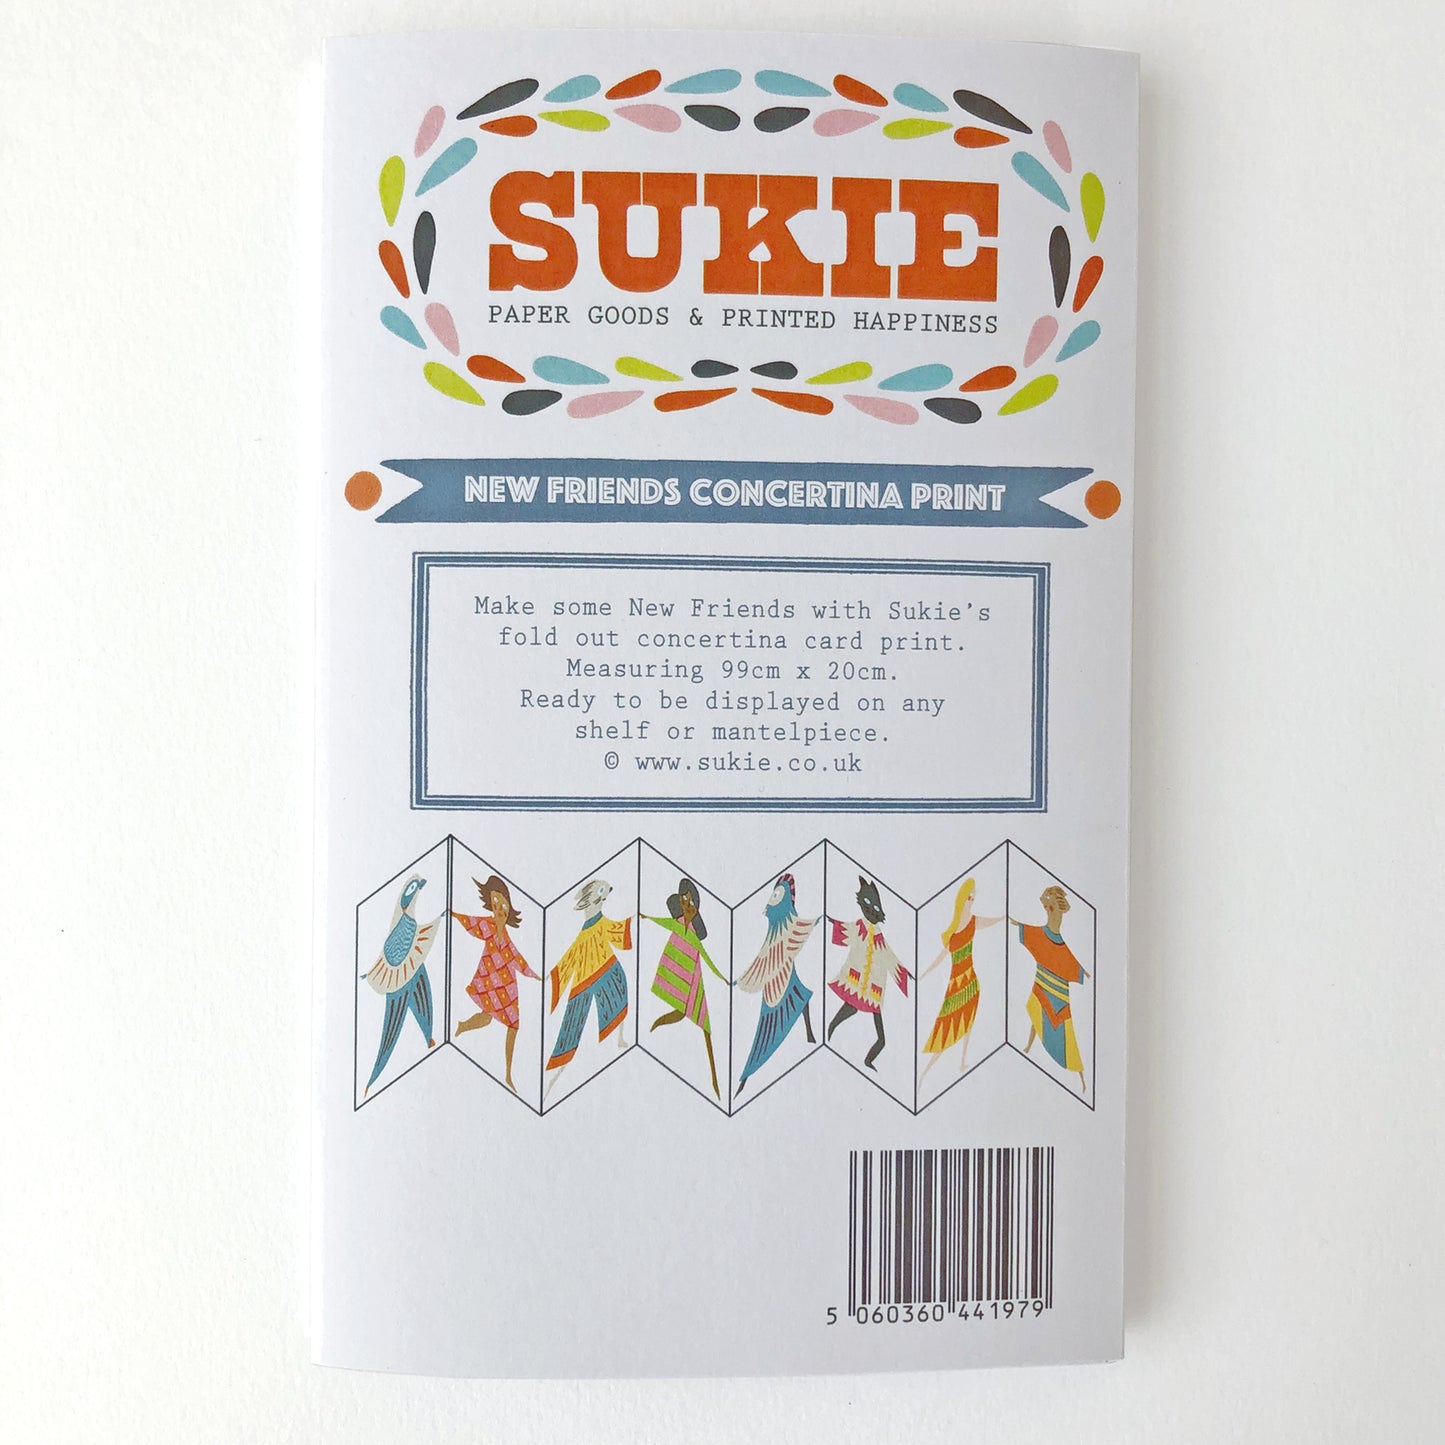 New Friends Concertina Print - Sukie